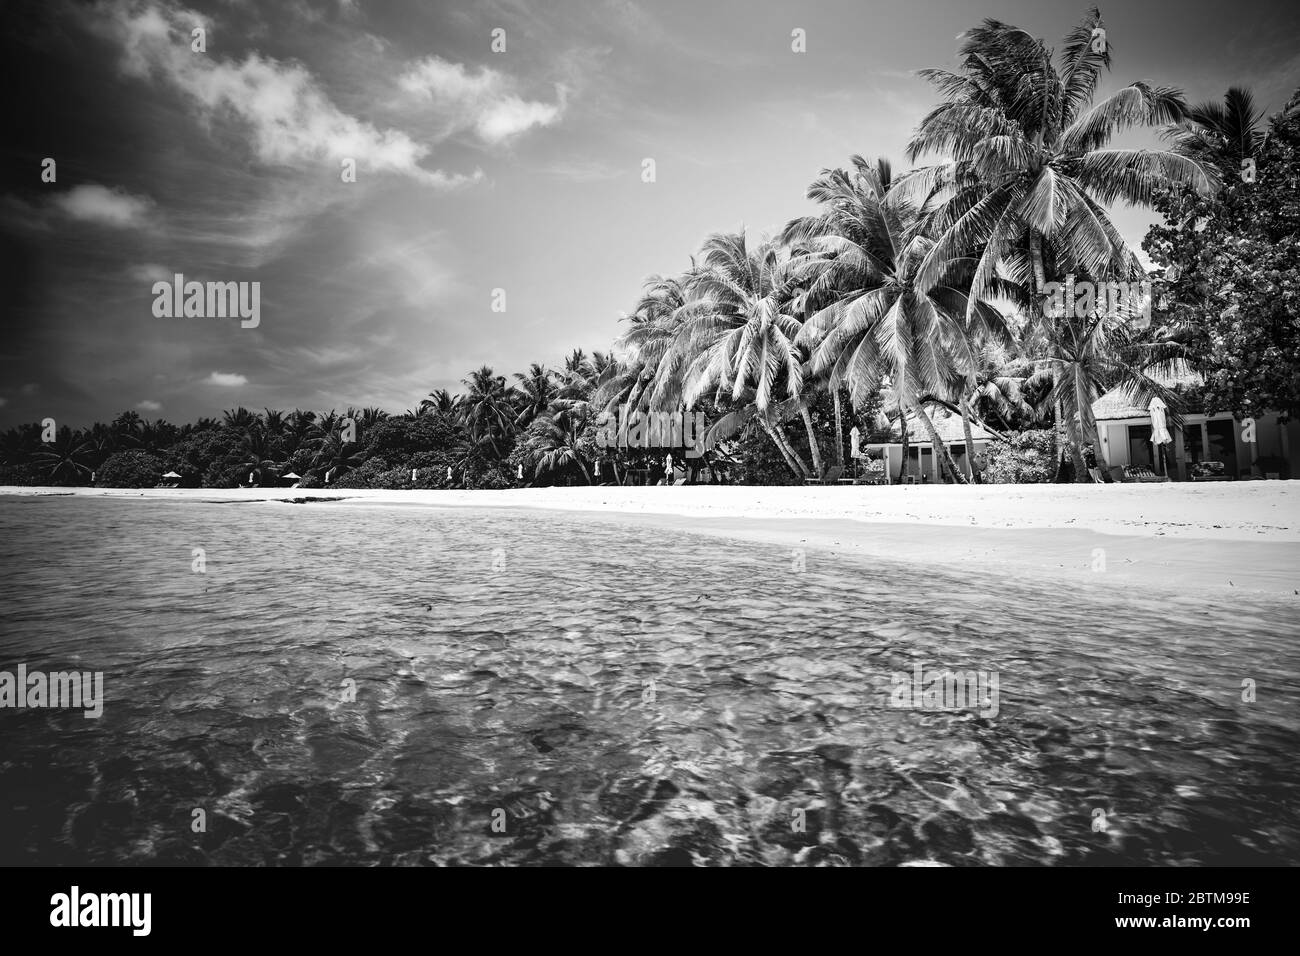 Résumé, vacances artistiques et vacances d'été. Scène de plage en noir et blanc parfaite. Coucher de soleil, silhouette de palmiers à noix de coco au lever du soleil Banque D'Images